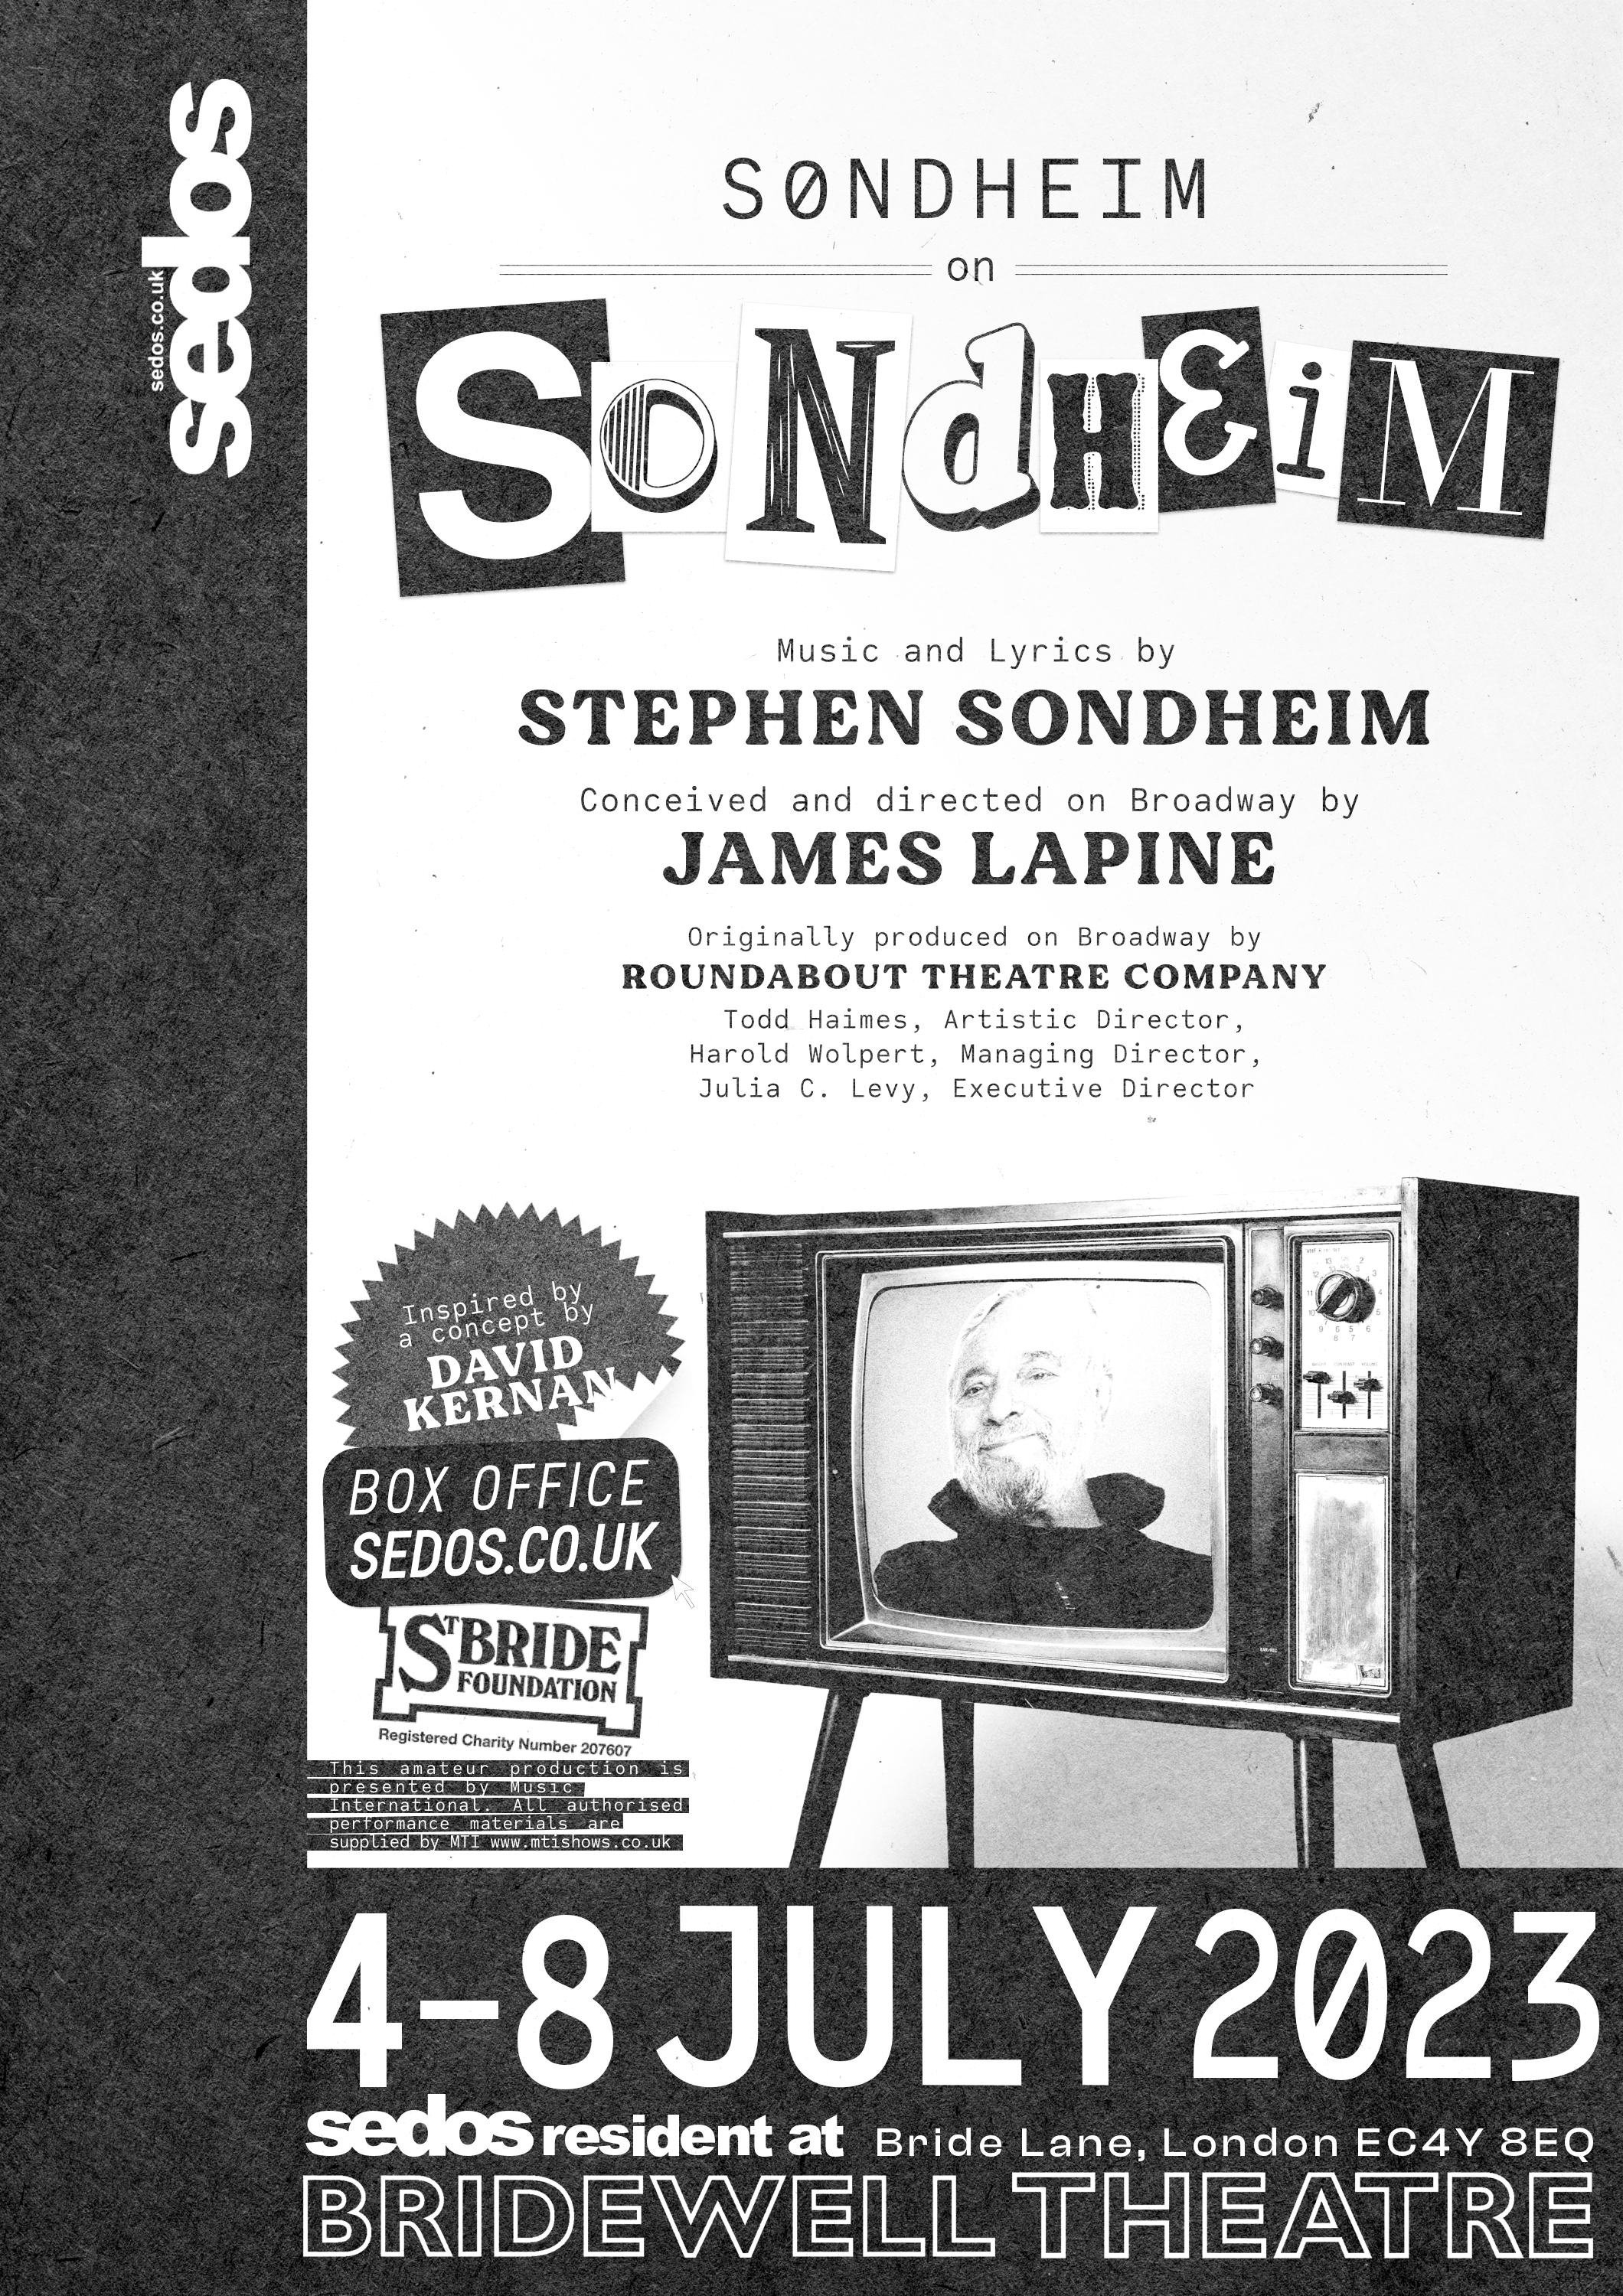 Sondheim on Sondheim flyer image